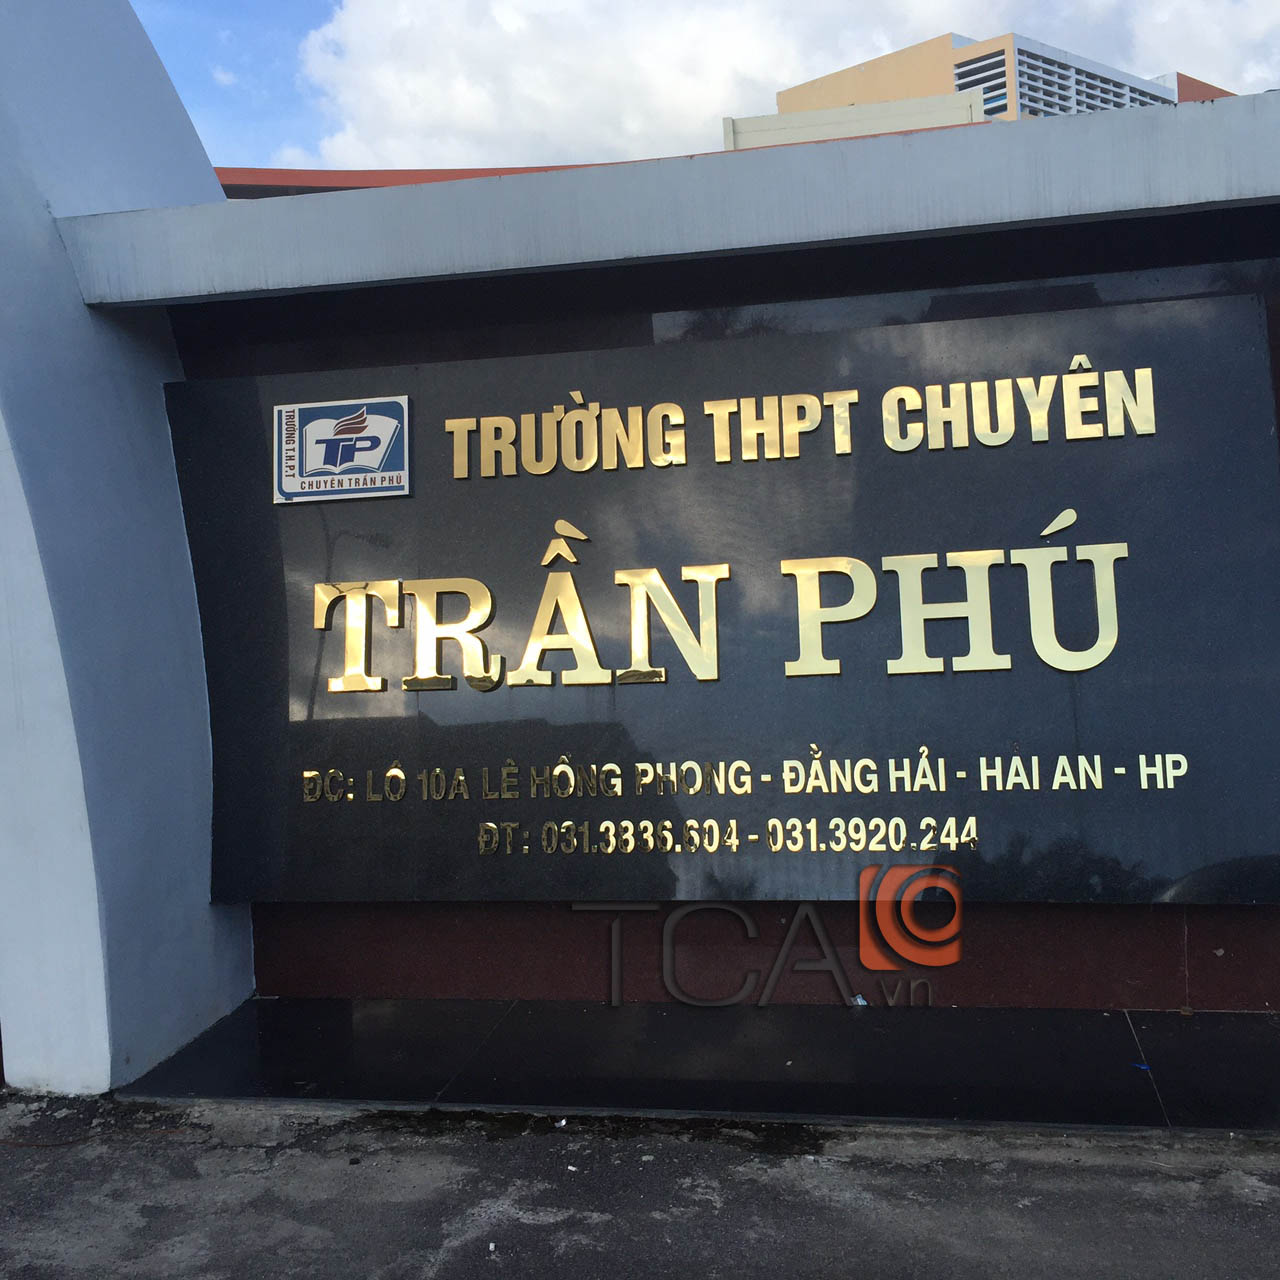 Tư vấn lắp đặt âm thanh thông báo TOA FV-200: Trường THPT chuyên Trần Phú Hải Phòng